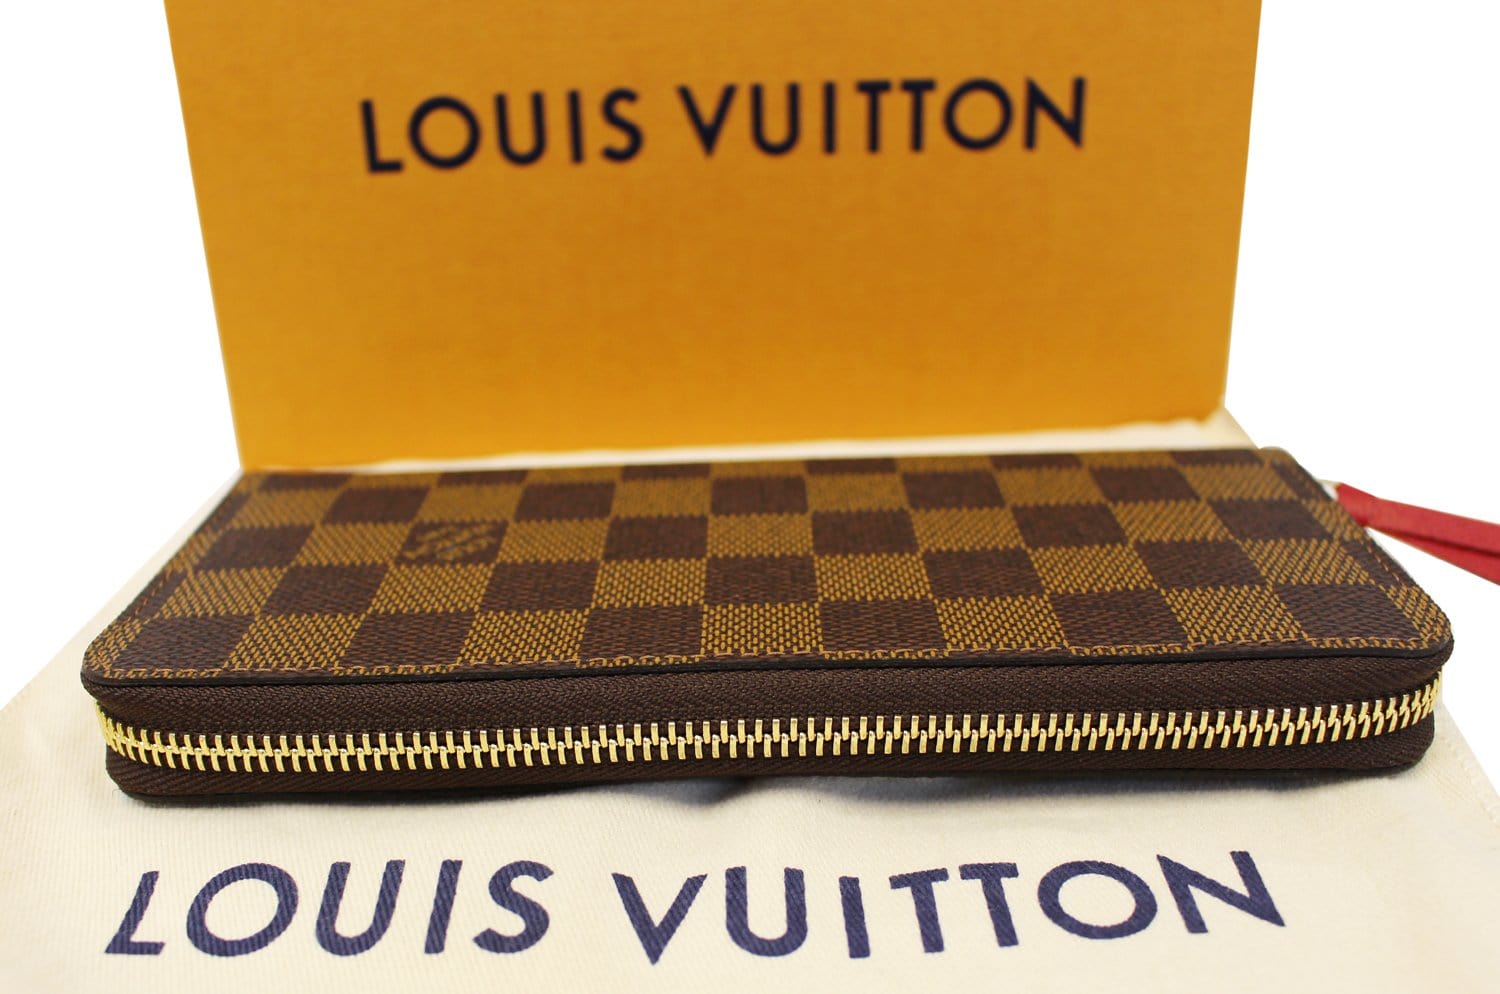 Shopbop Archive Louis Vuitton Clemence Wallet, Monogram